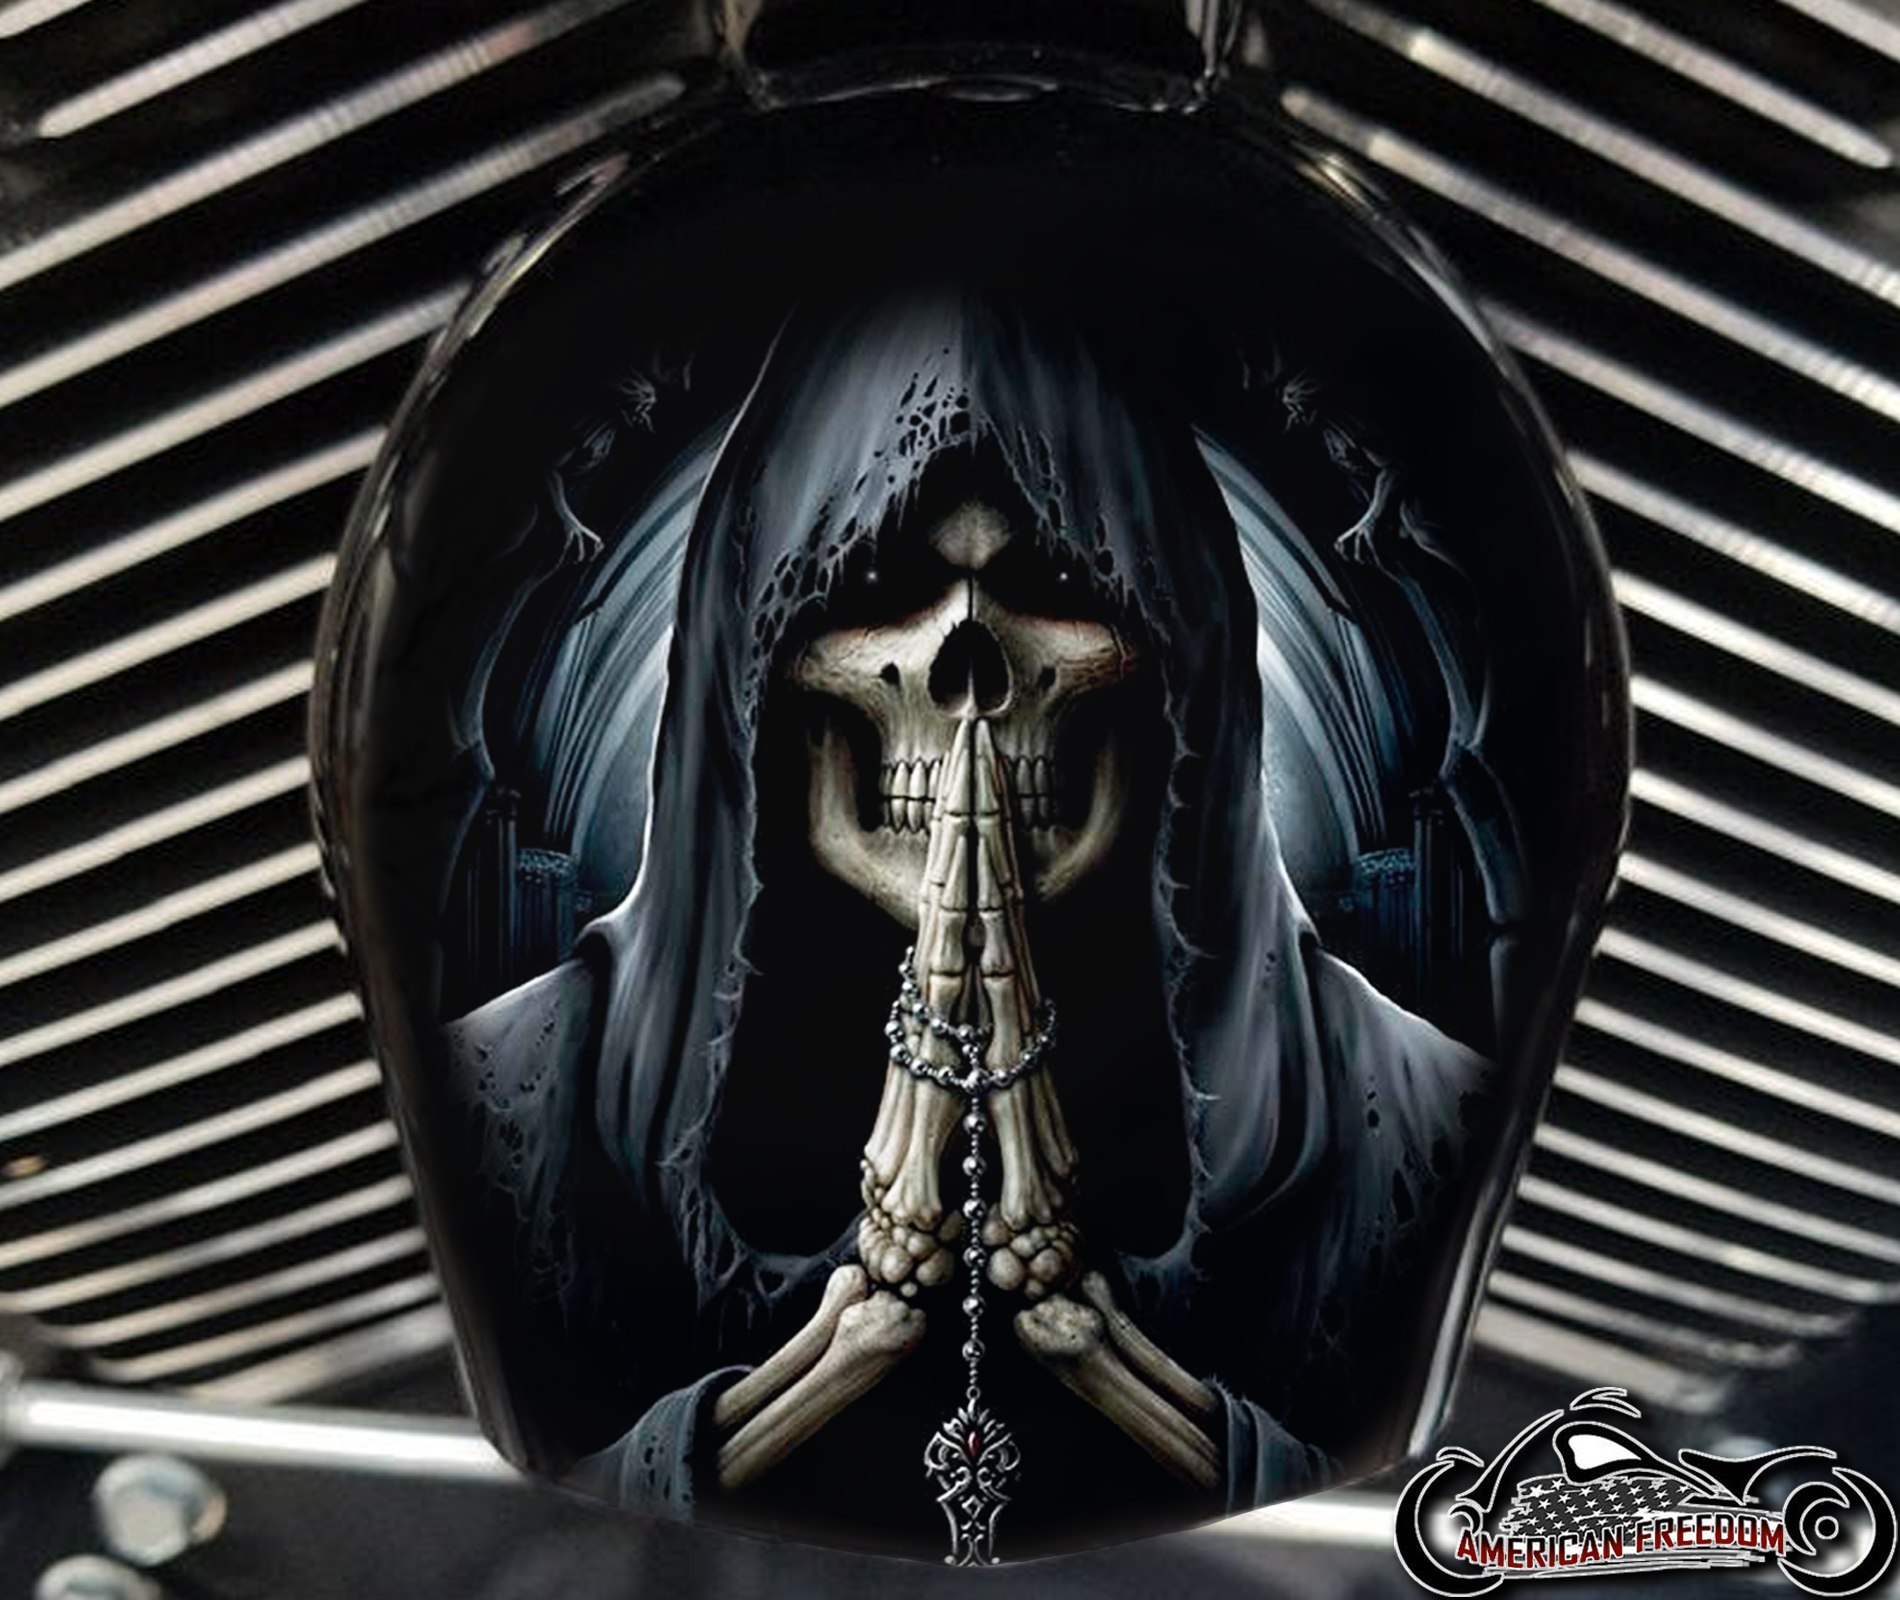 Custom Horn Cover - Reaper Praying